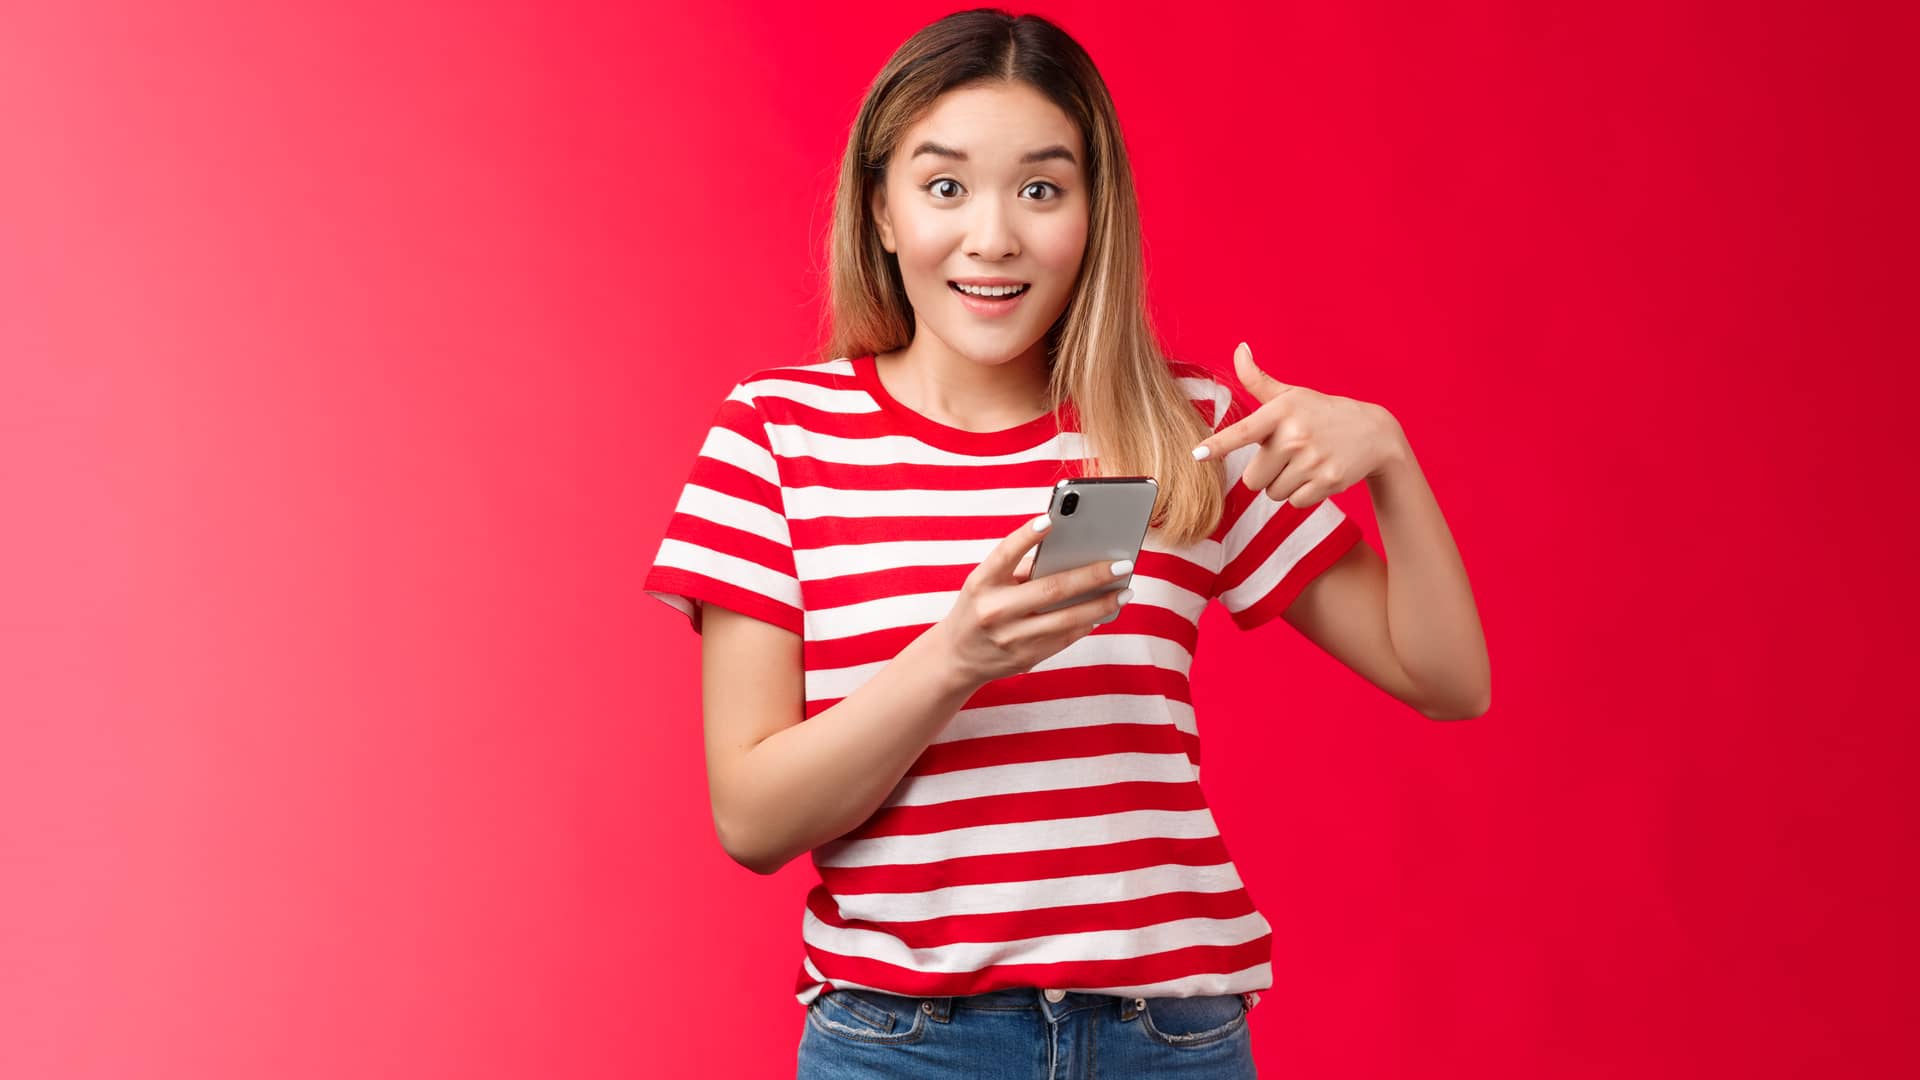 ¿Dudas sobre Vodafone? Consulta nuestra guía para clientes